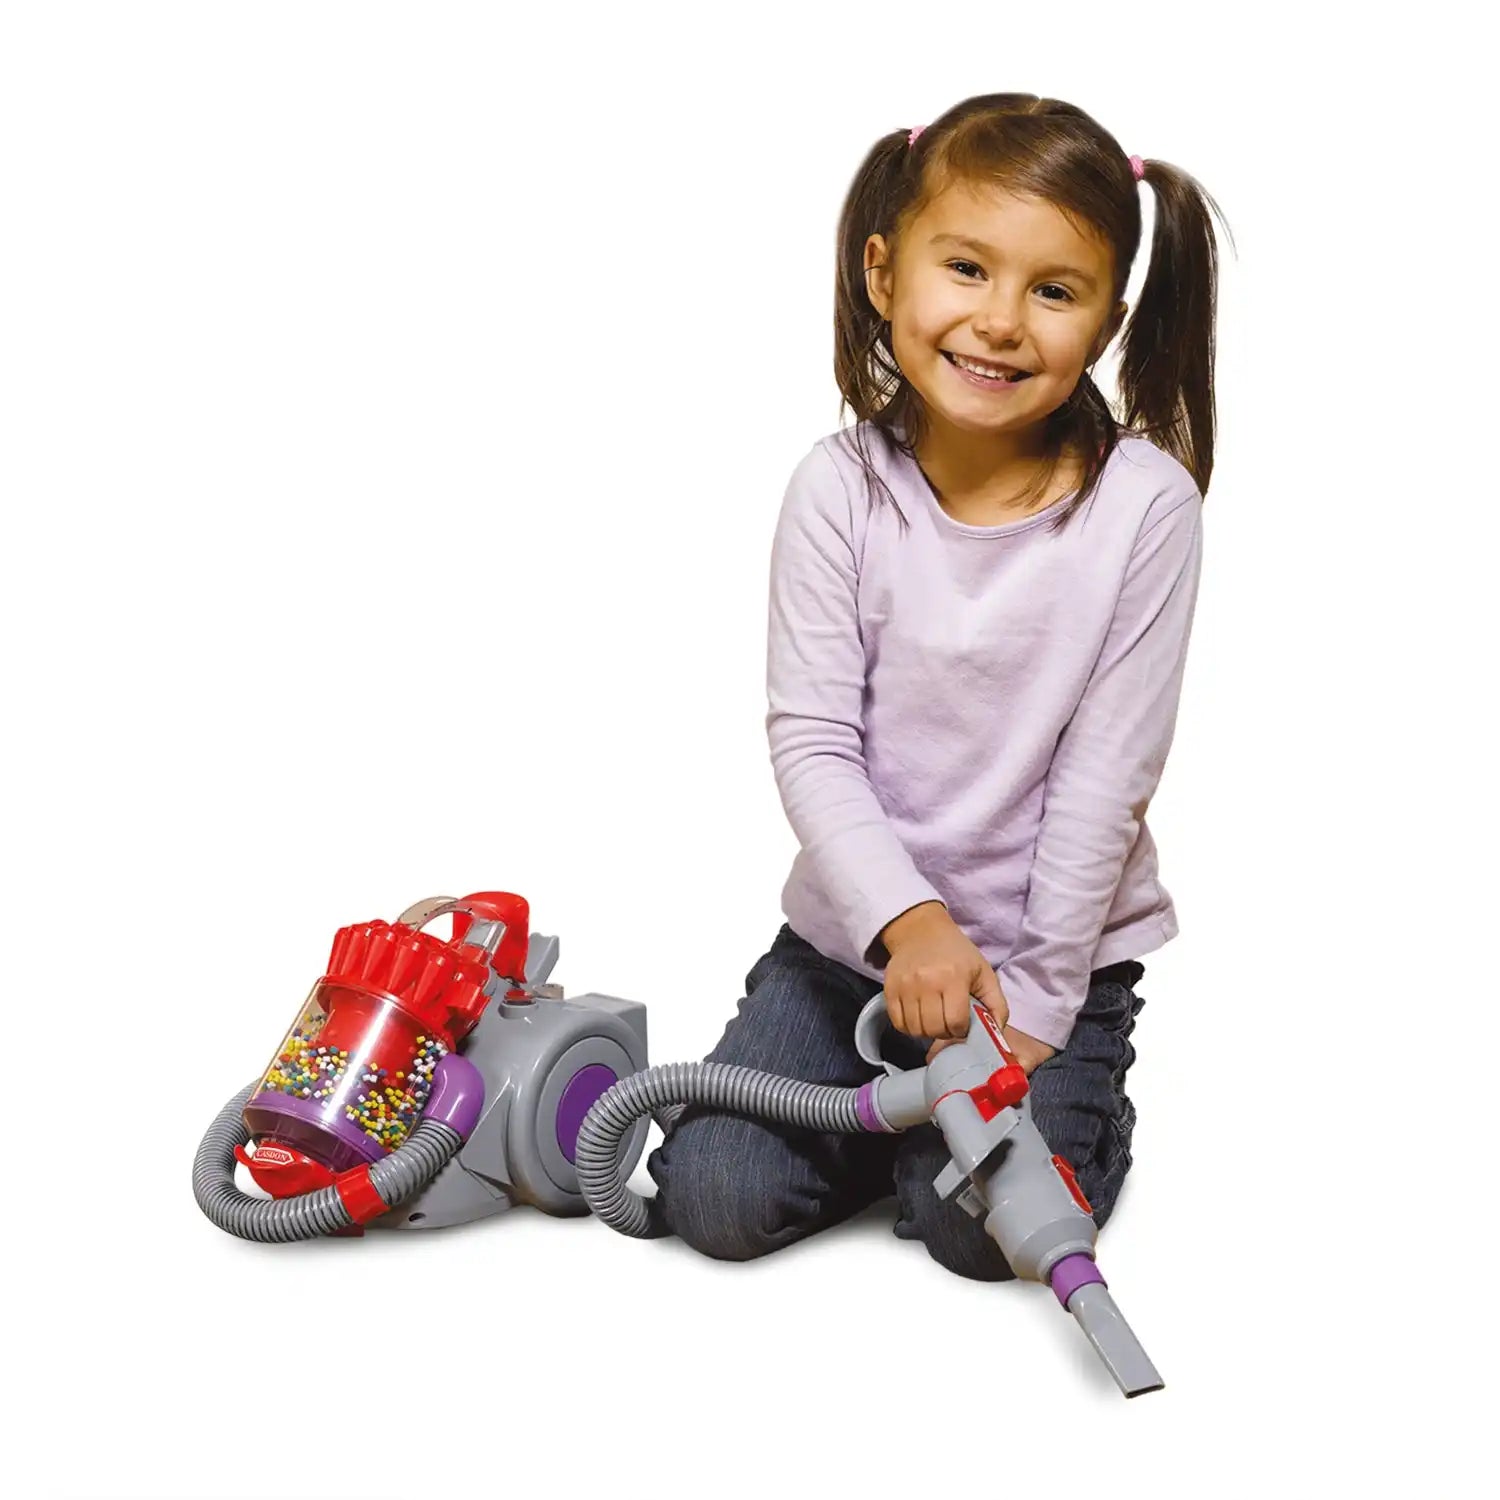 Casdon - Dyson DC22 Vacuum Cleaner Toy